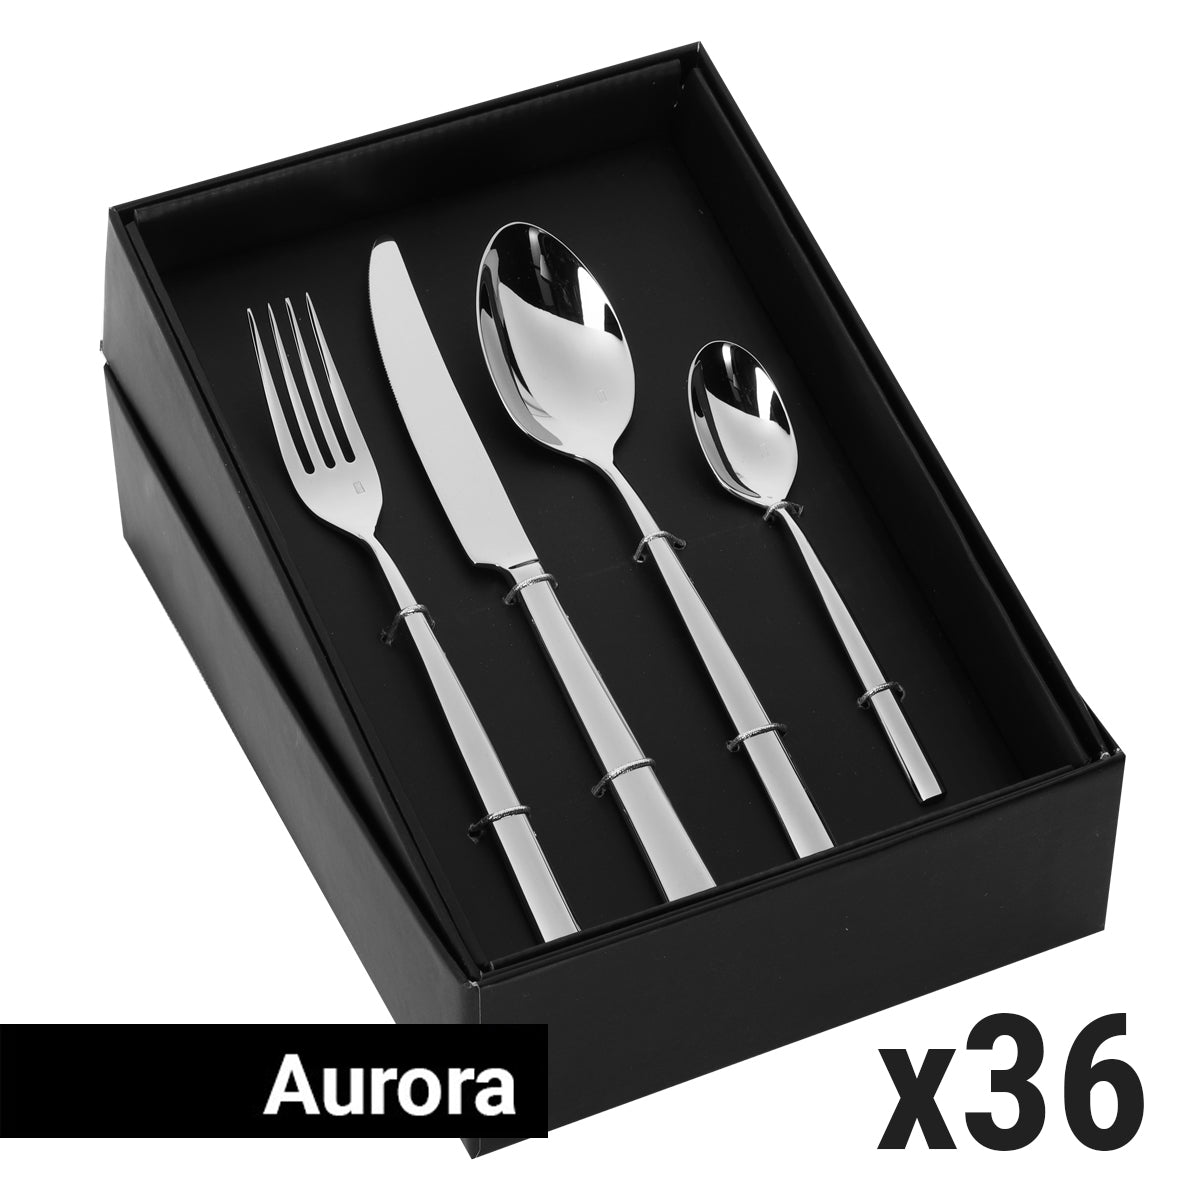 (144 броя) Комплект прибори за хранене Aurora - 144 броя - За 36 души